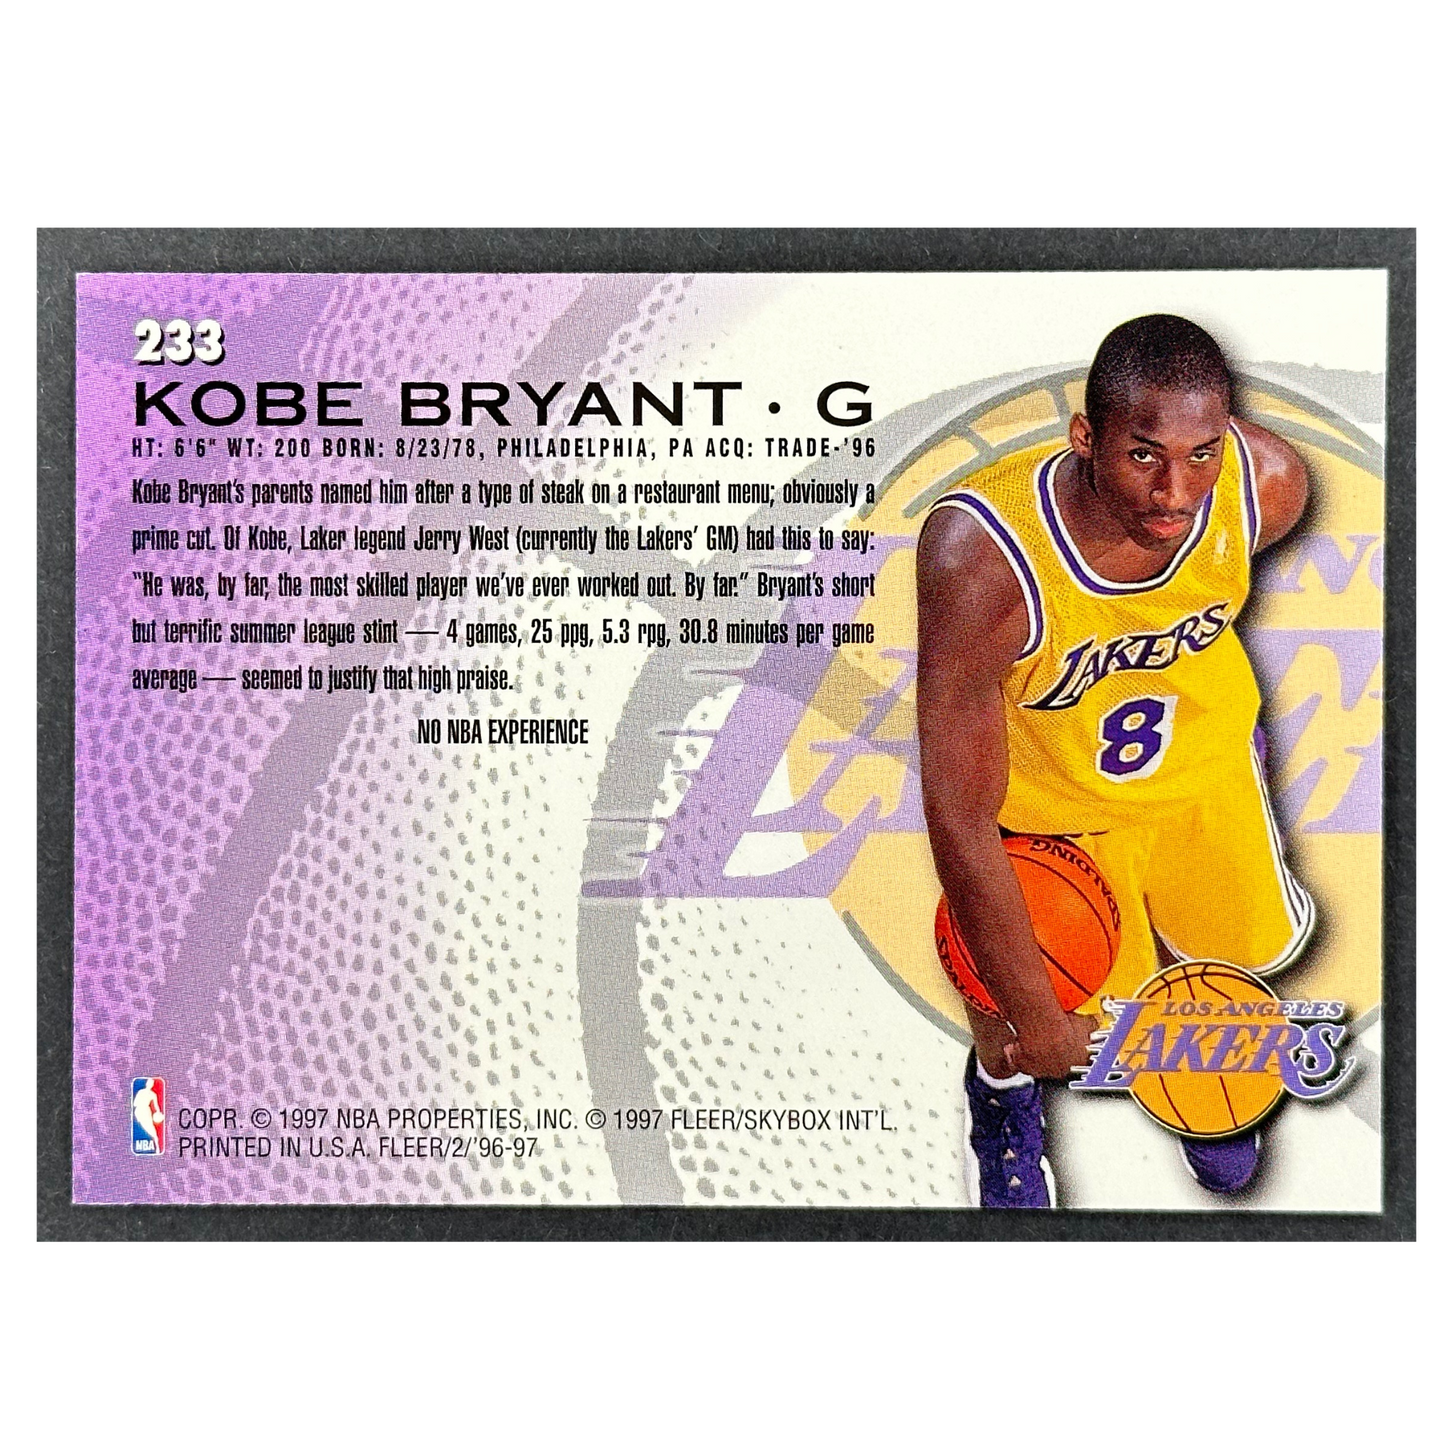 Kobe Bryant 1996-97 Fleer RC Rookie Card #233